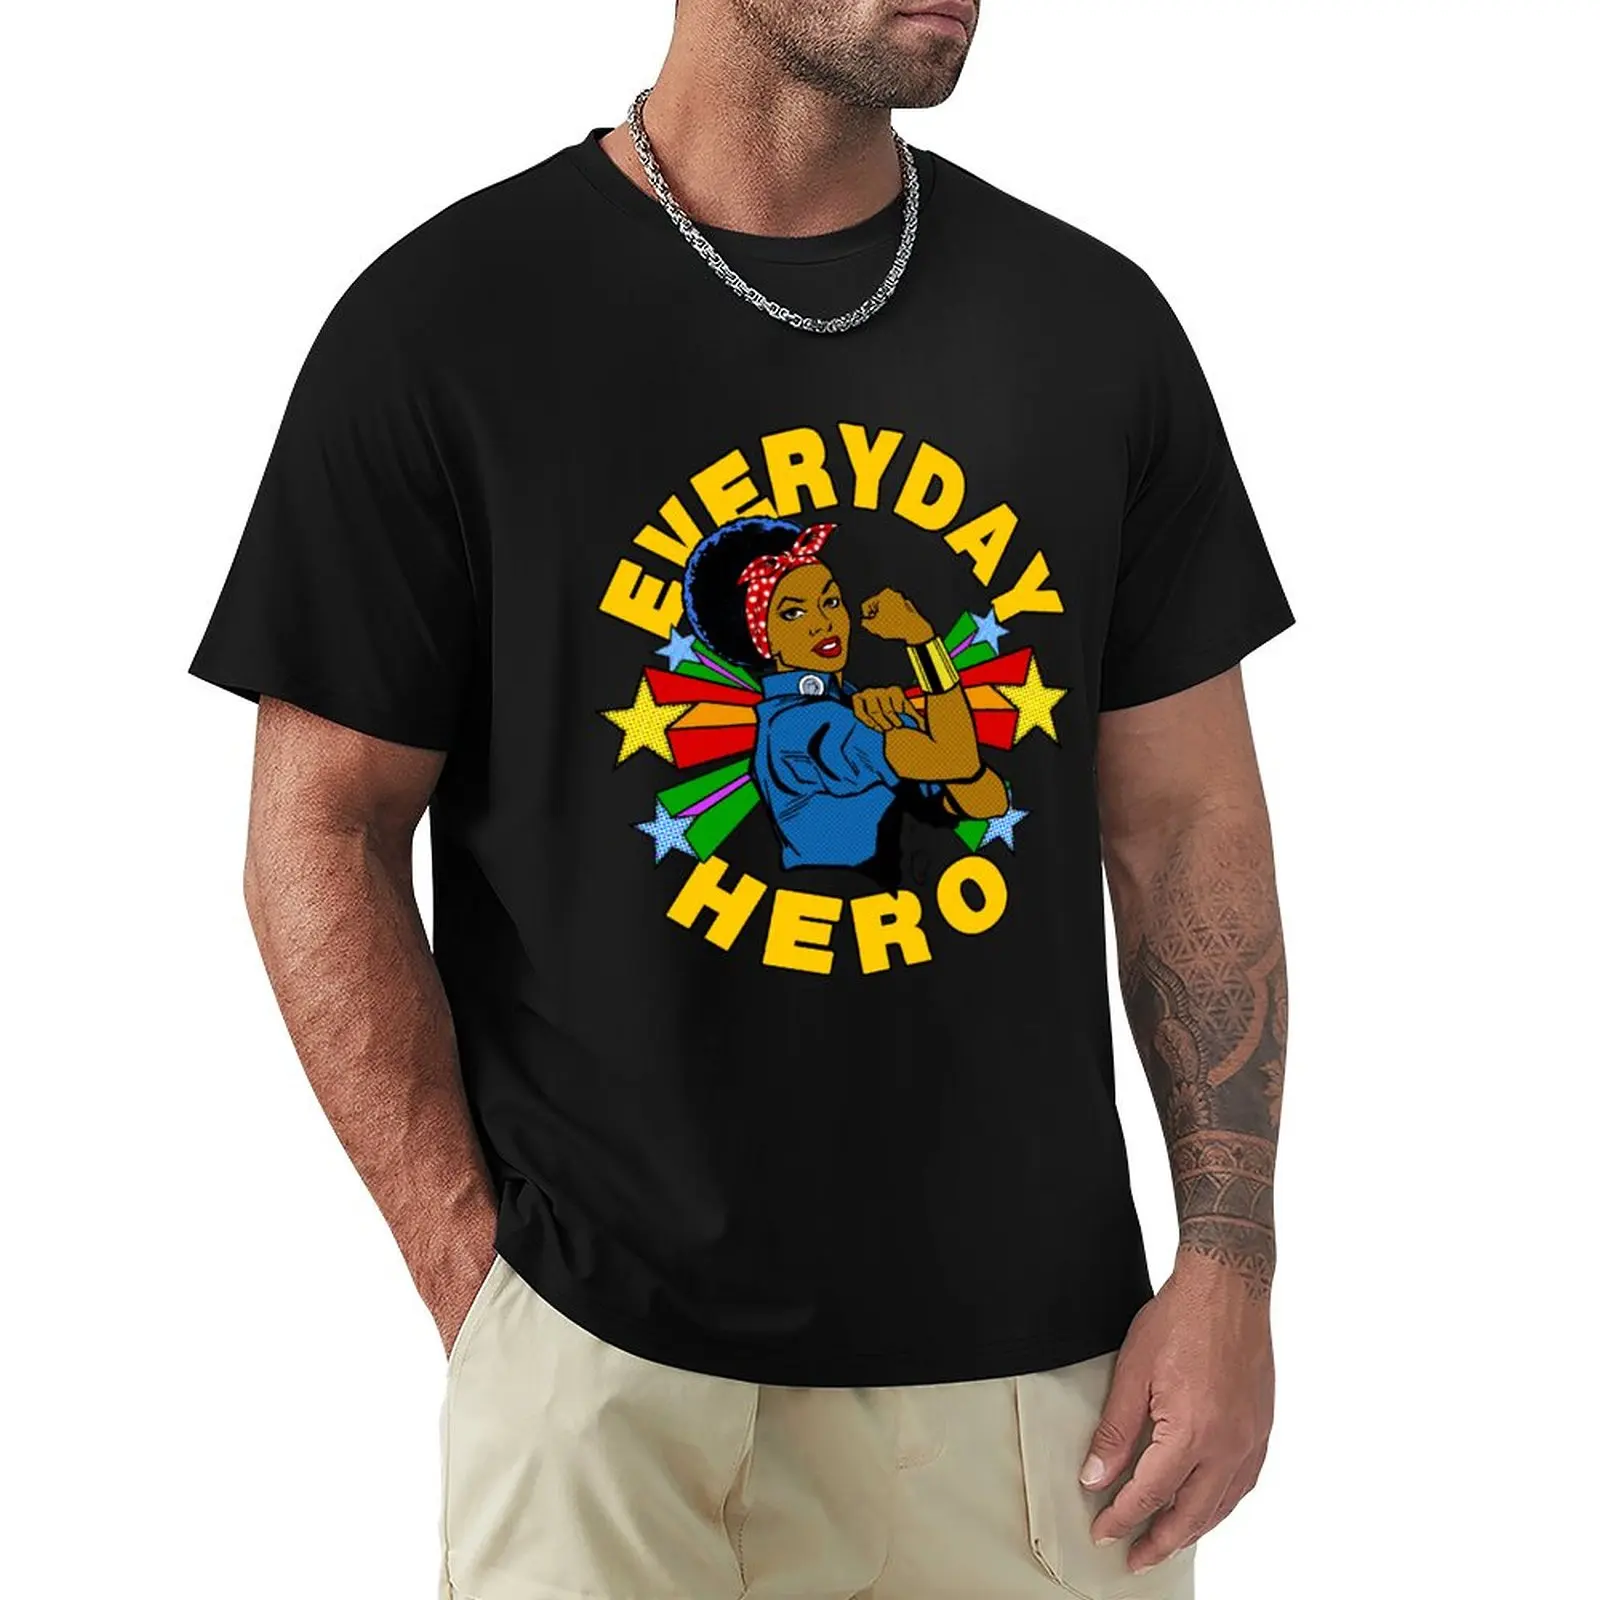 Повседневная футболка Hero - River, футболка с коротким рукавом, футболка нового выпуска, милая одежда, мужские футболки, забавные